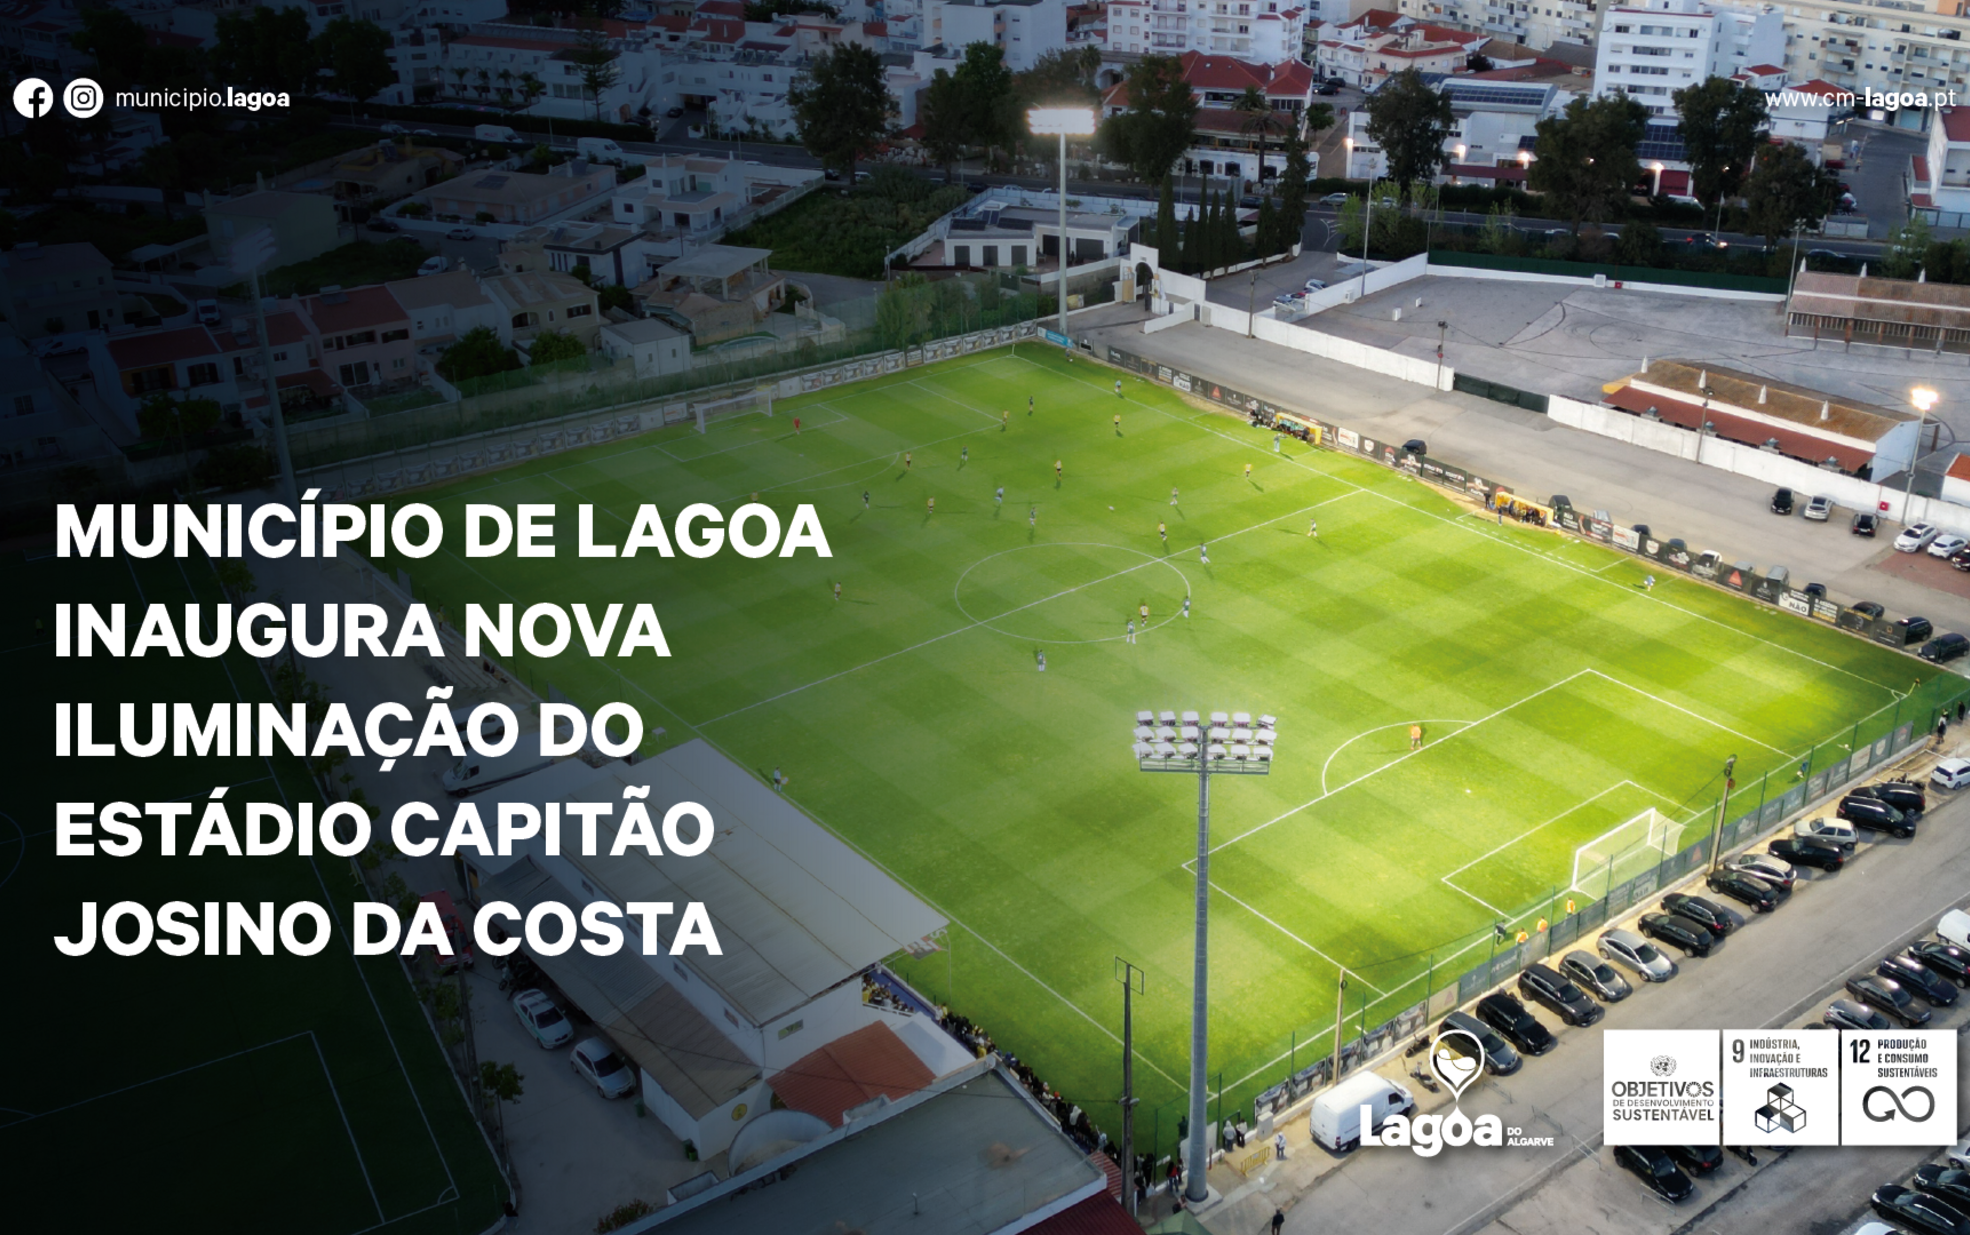 Município de Lagoa inaugura nova iluminação do Estádio Capitão Josino da Costa